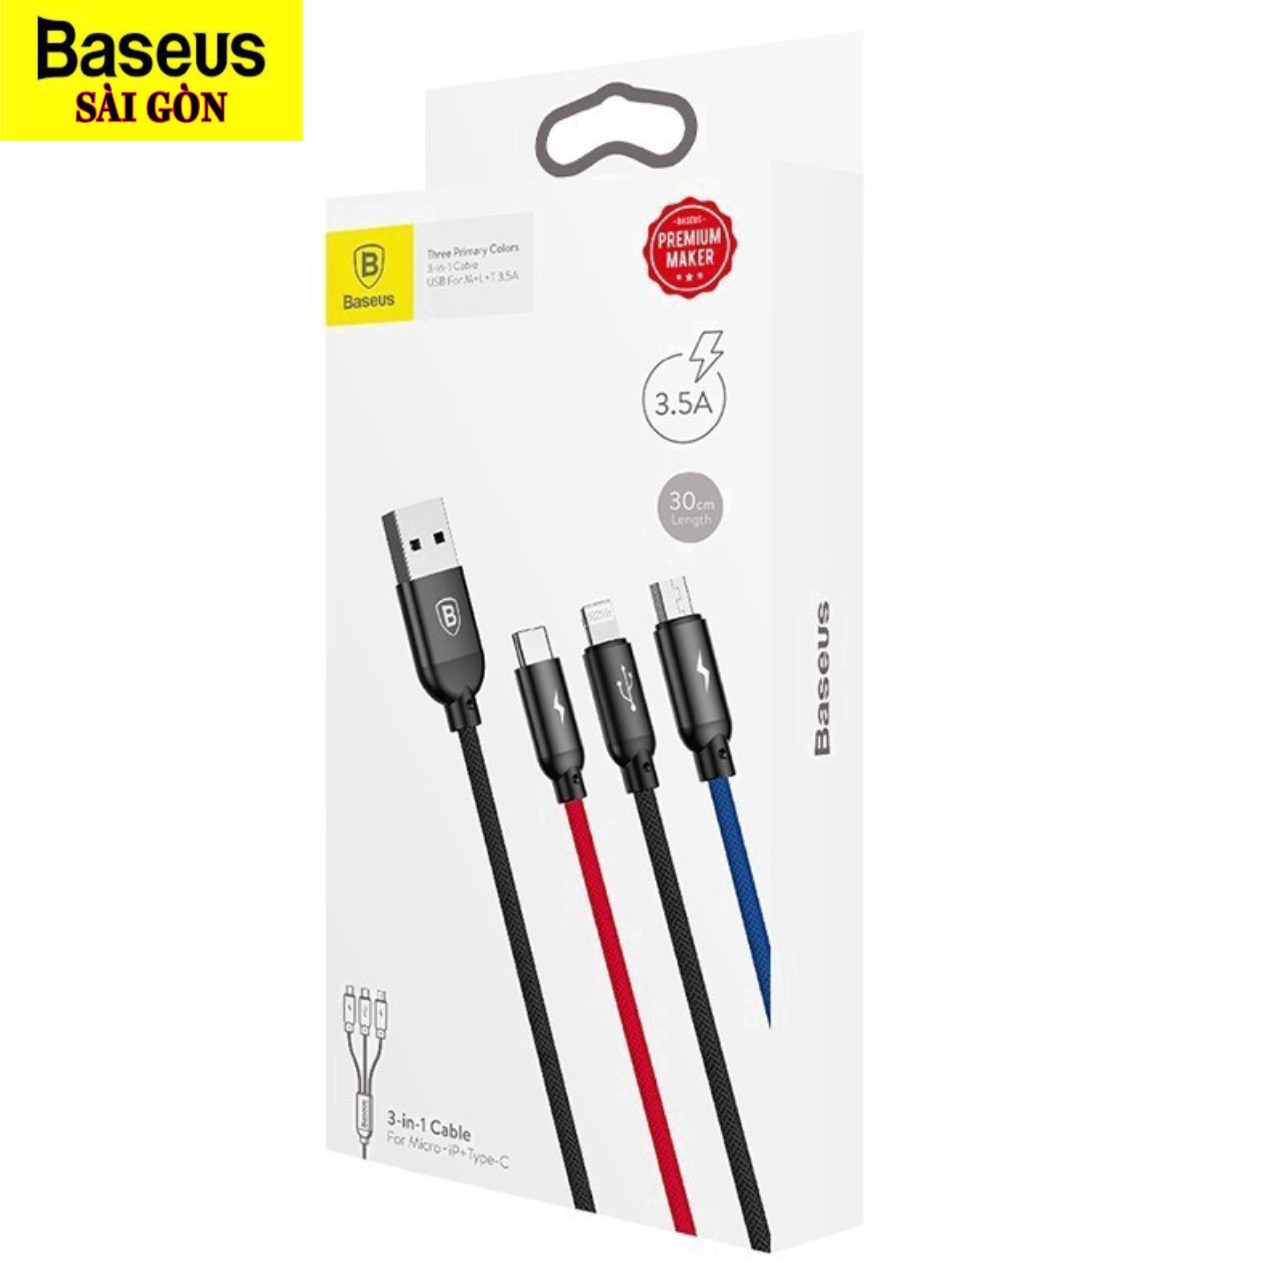 Cáp sạc 3 đầu và truyền dữ liệu tốc độ cao Baseus Three Primary Colors 3 in 1 cable CAMLT-BSY (USB to Type C/ Micro/ Light-ning Fast Charging Cable, 3.5A)- Hàng chính hãng